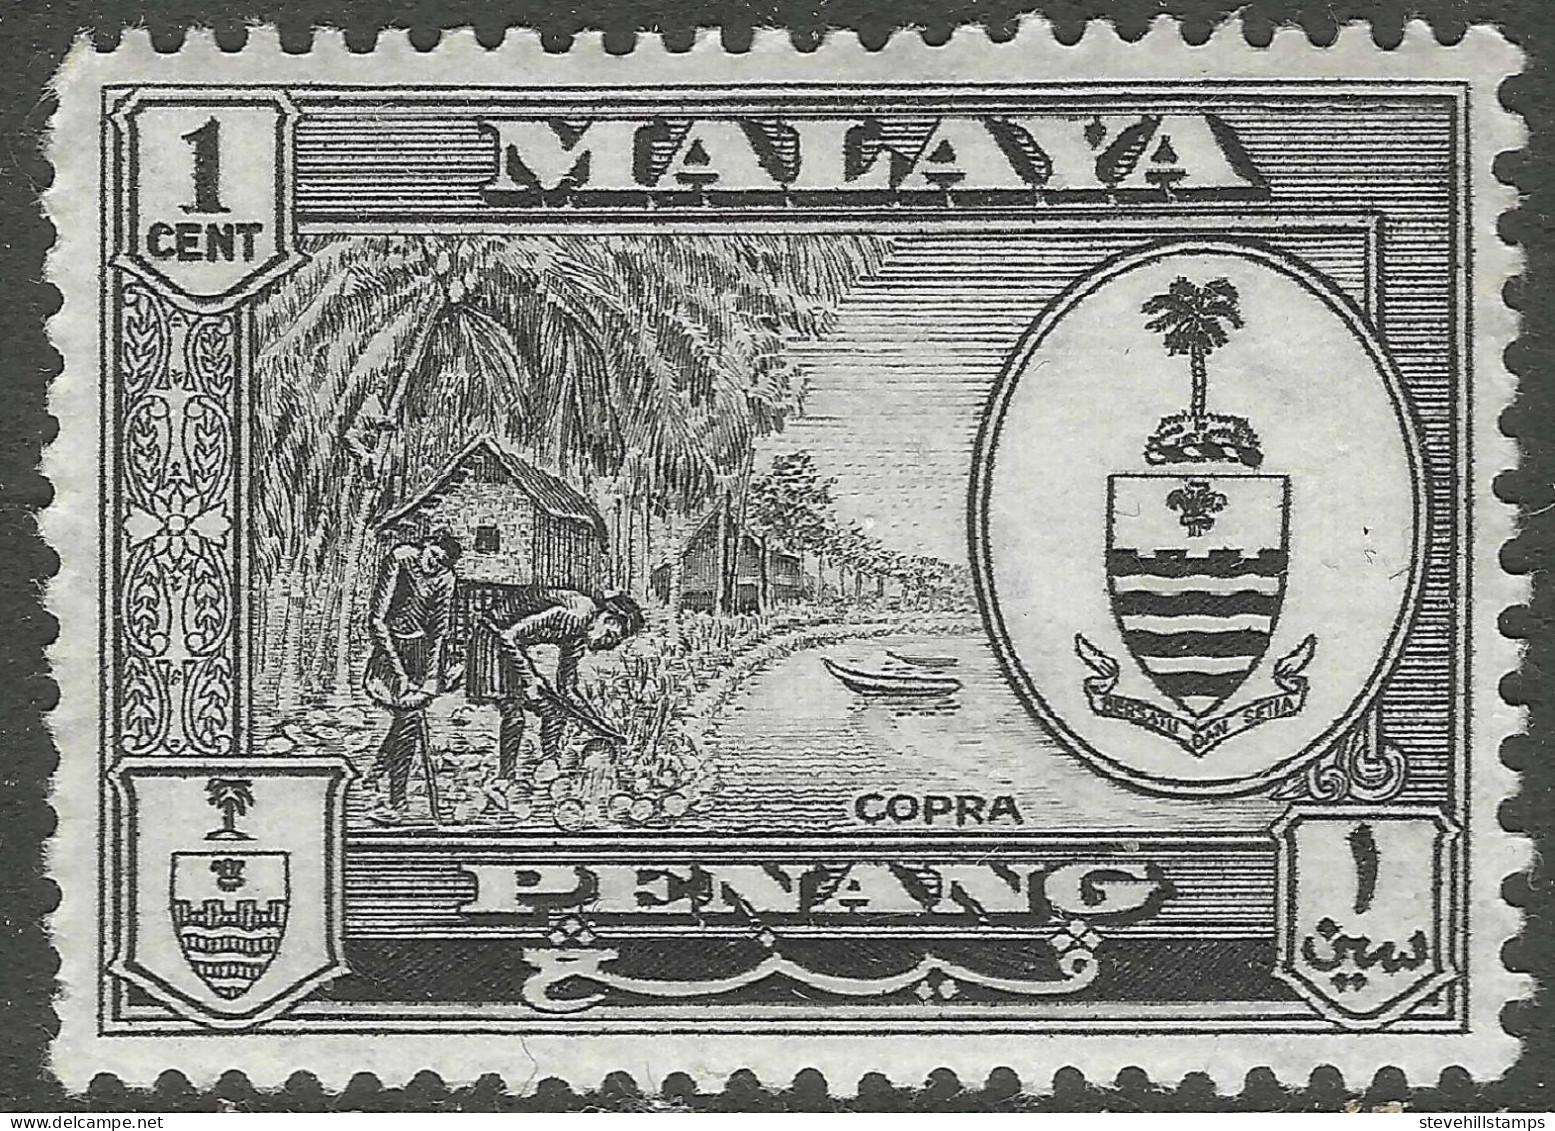 Penang (Malaysia). 1960 Arms. 1c MH. SG 55 - Penang